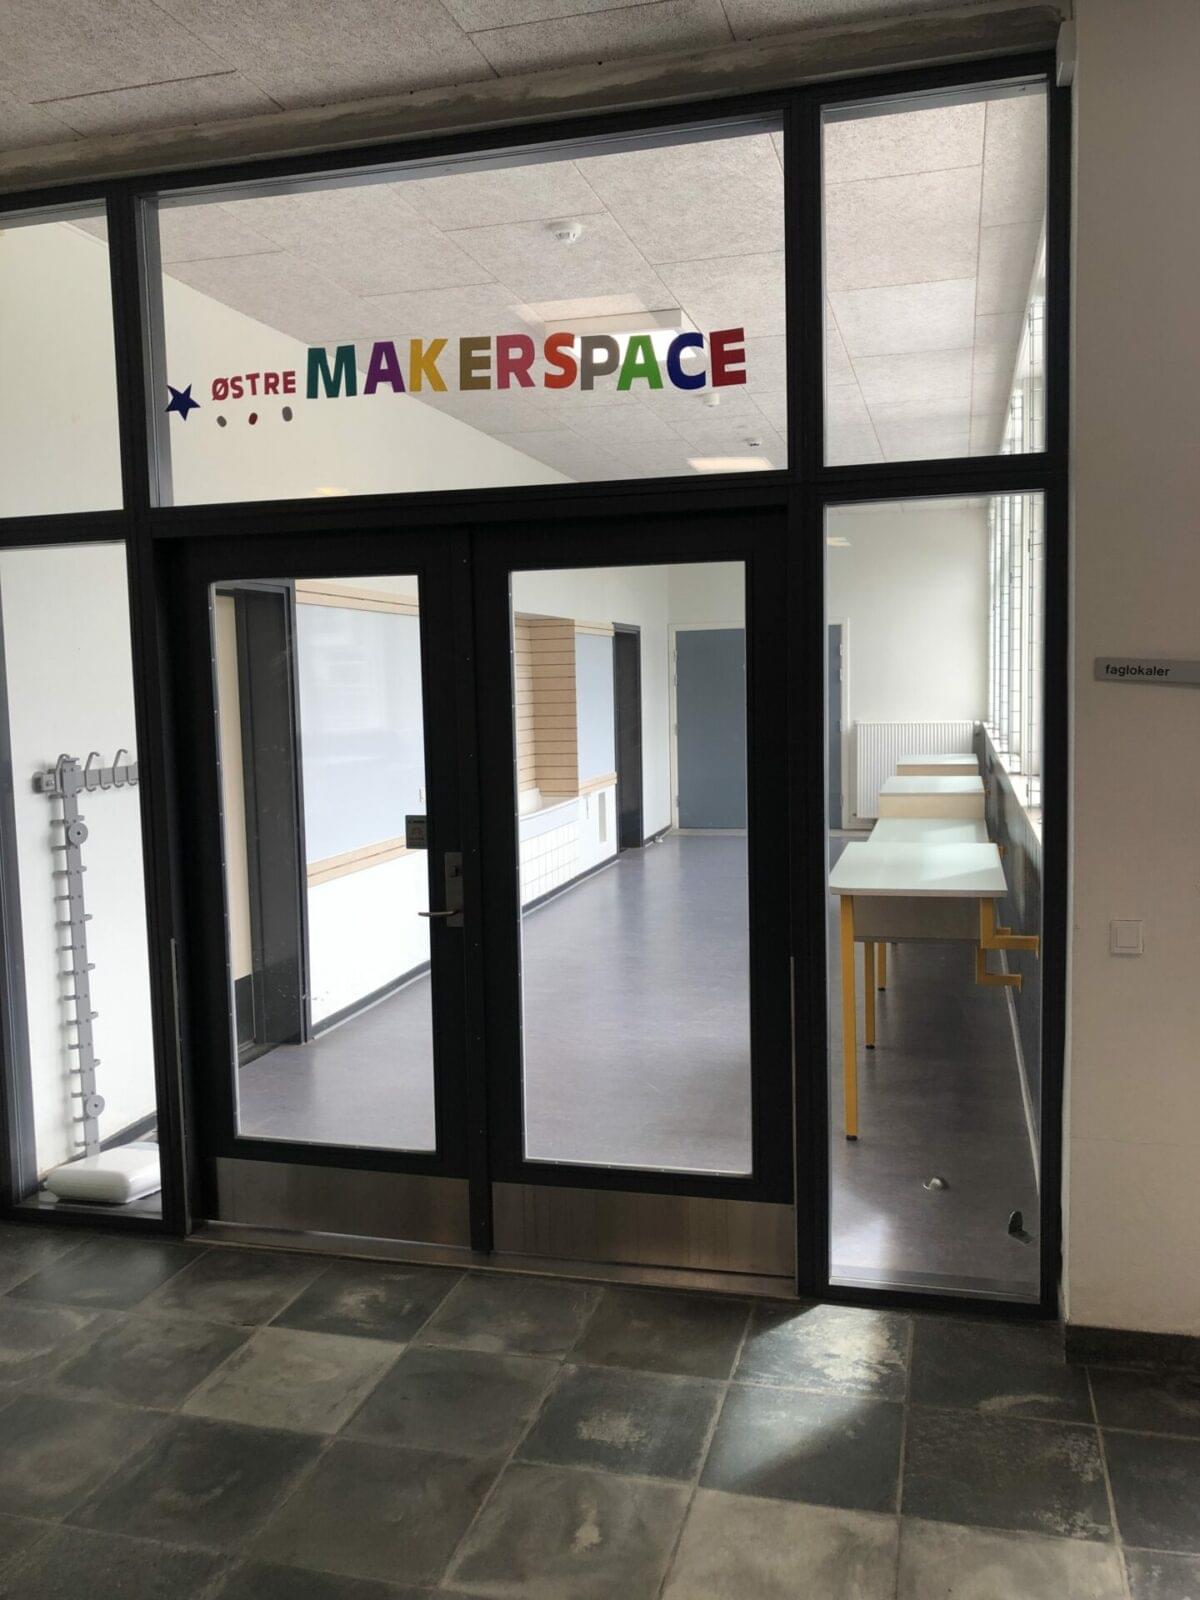 Ikast østre skole makerspace indgang til skolen